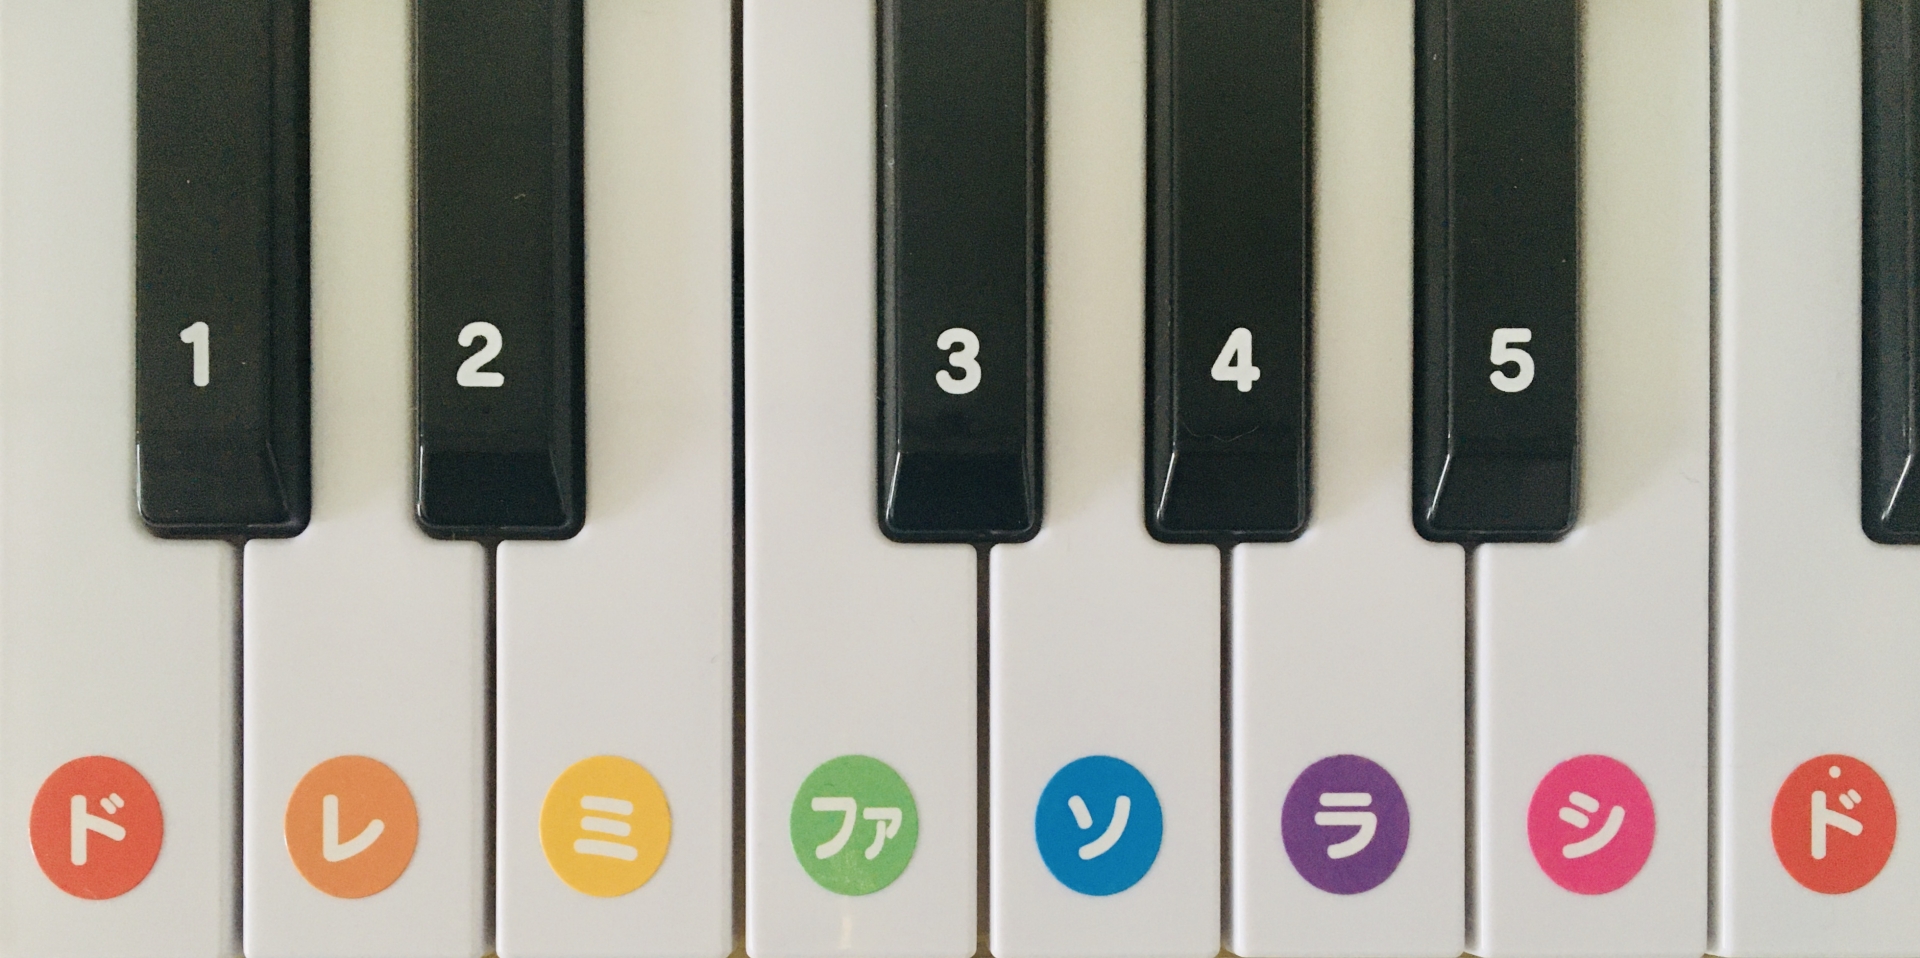 ピアノの鍵盤の画像